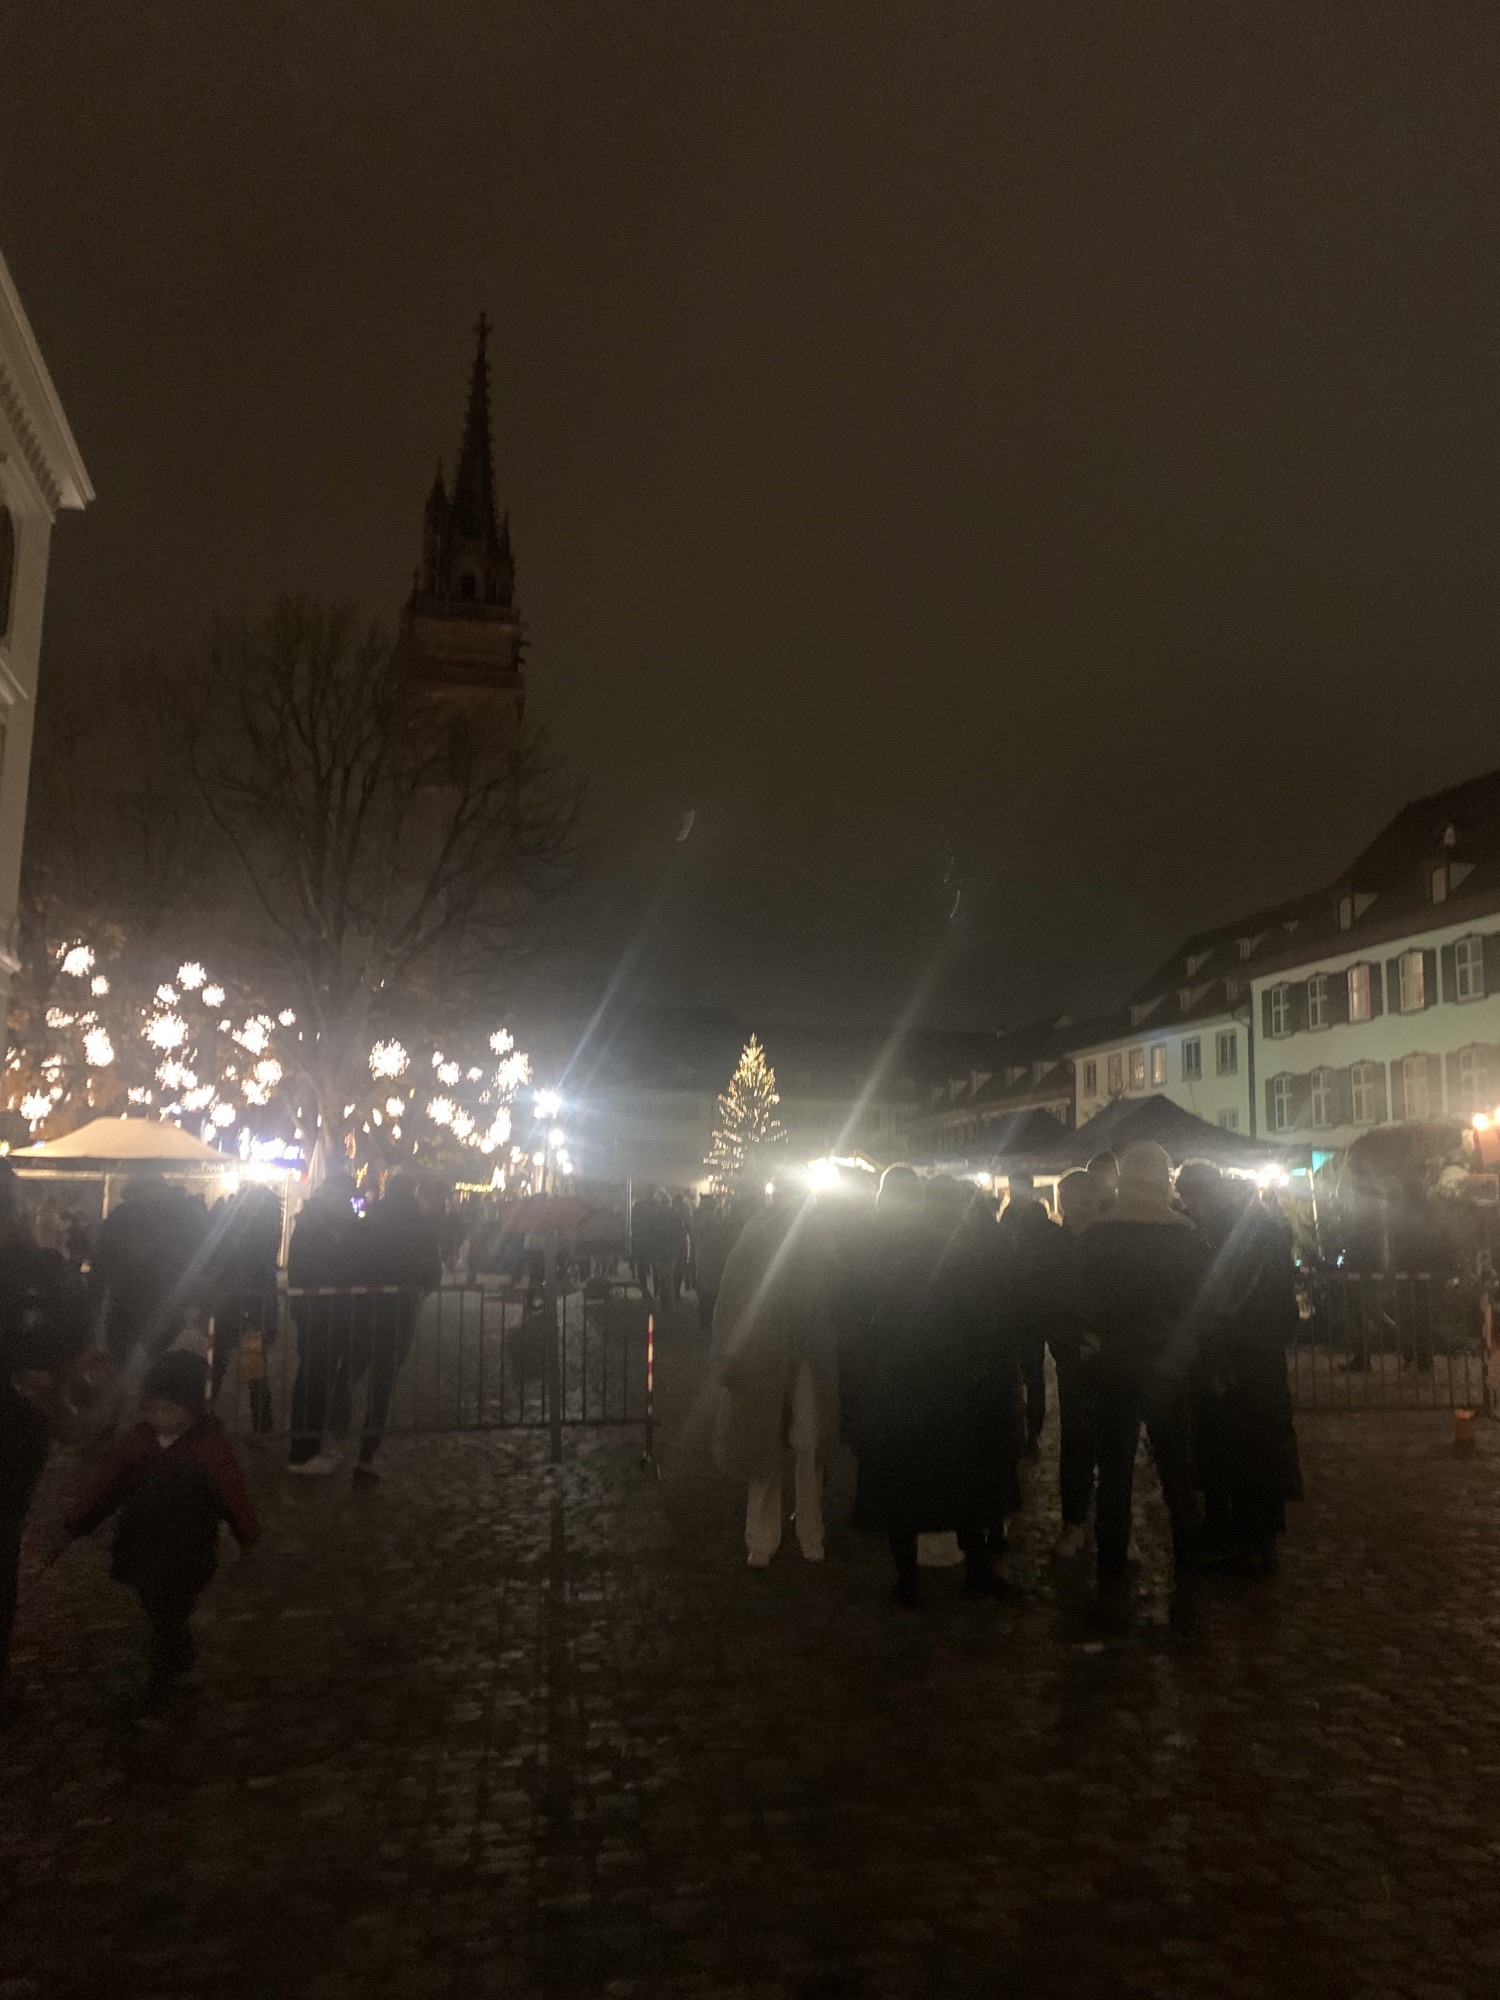 Basel Christmas market entrance